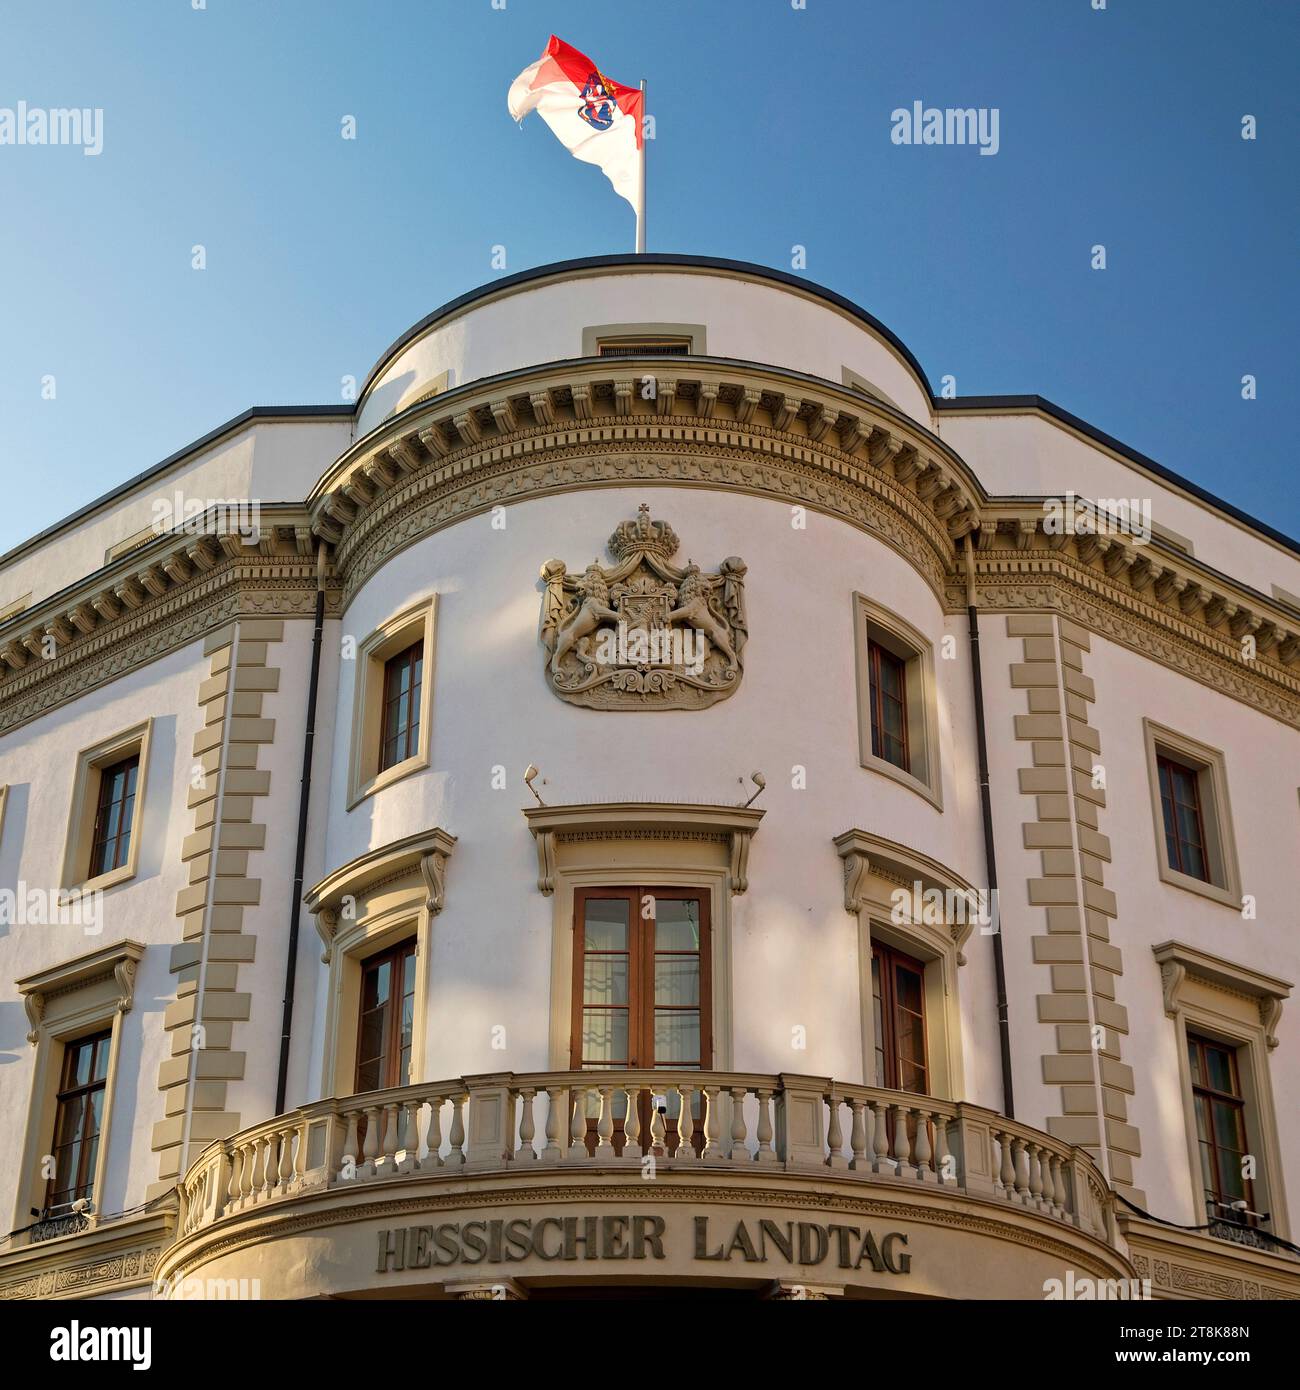 Parlement de l'État de Hesse avec drapeau d'État dans l'ancien palais de la ville de Nassau, Allemagne, Hesse, Wiesbaden Banque D'Images